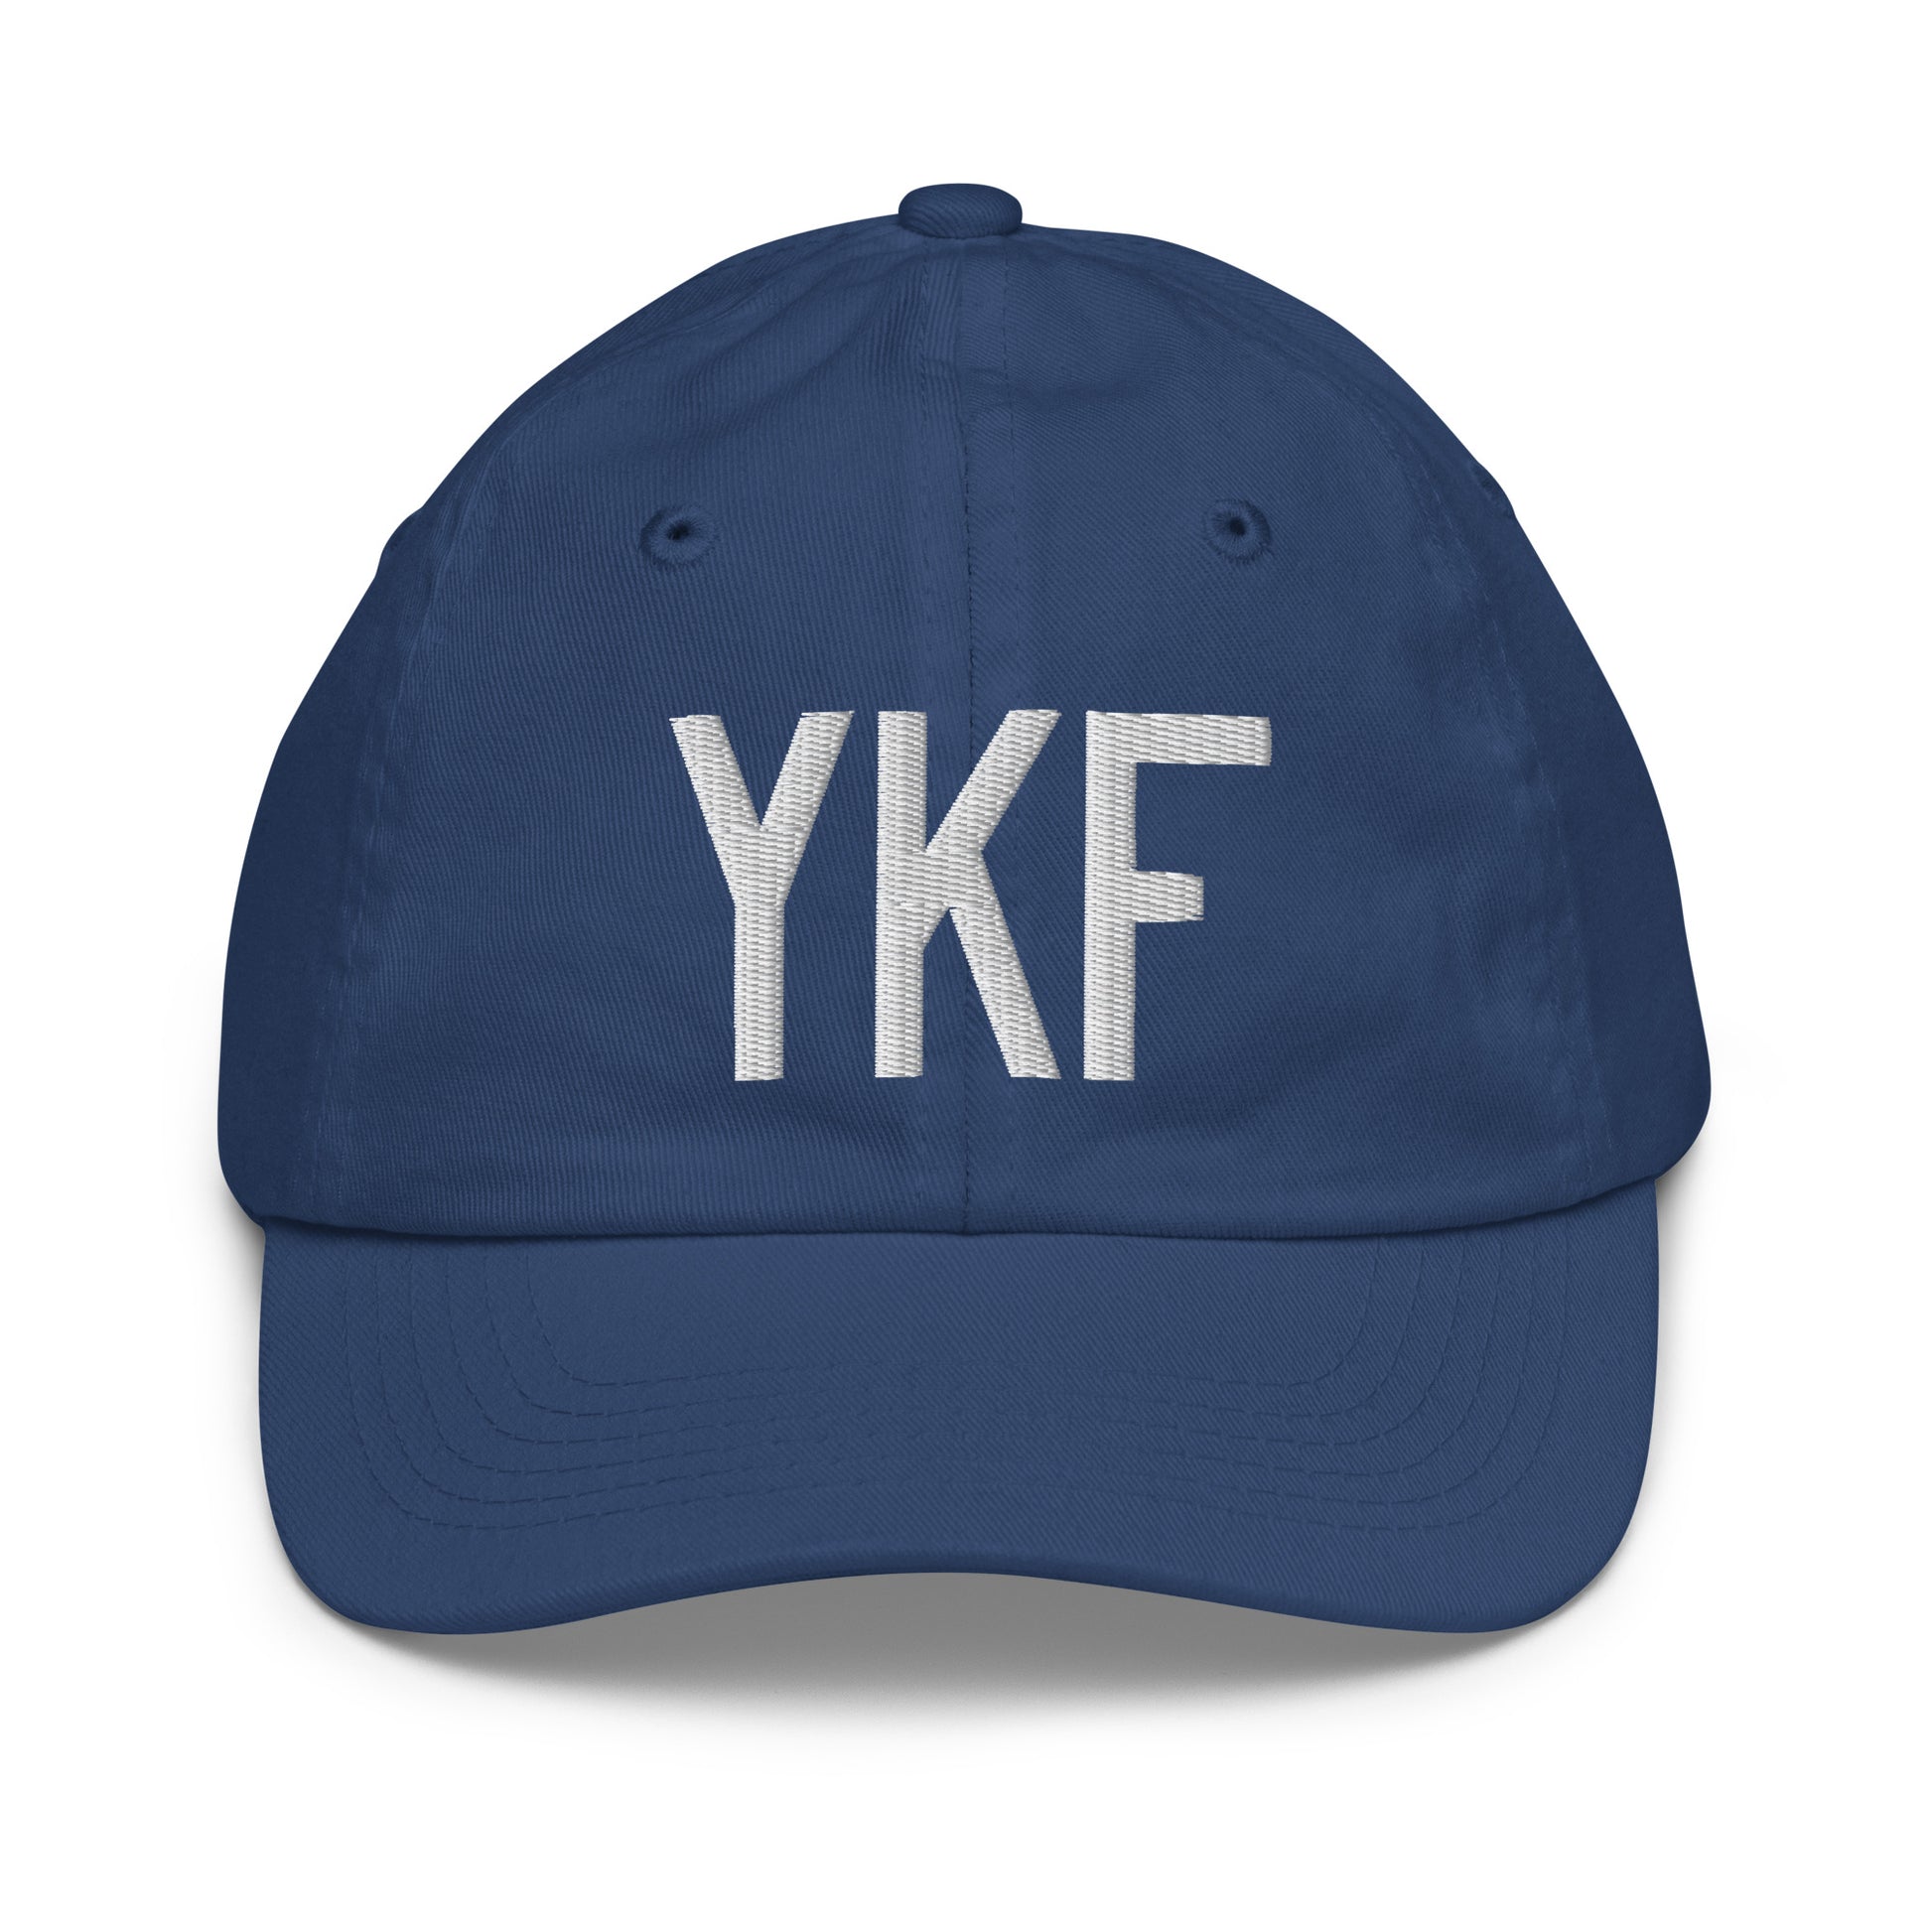 Airport Code Kid's Baseball Cap - White • YKF Waterloo • YHM Designs - Image 20